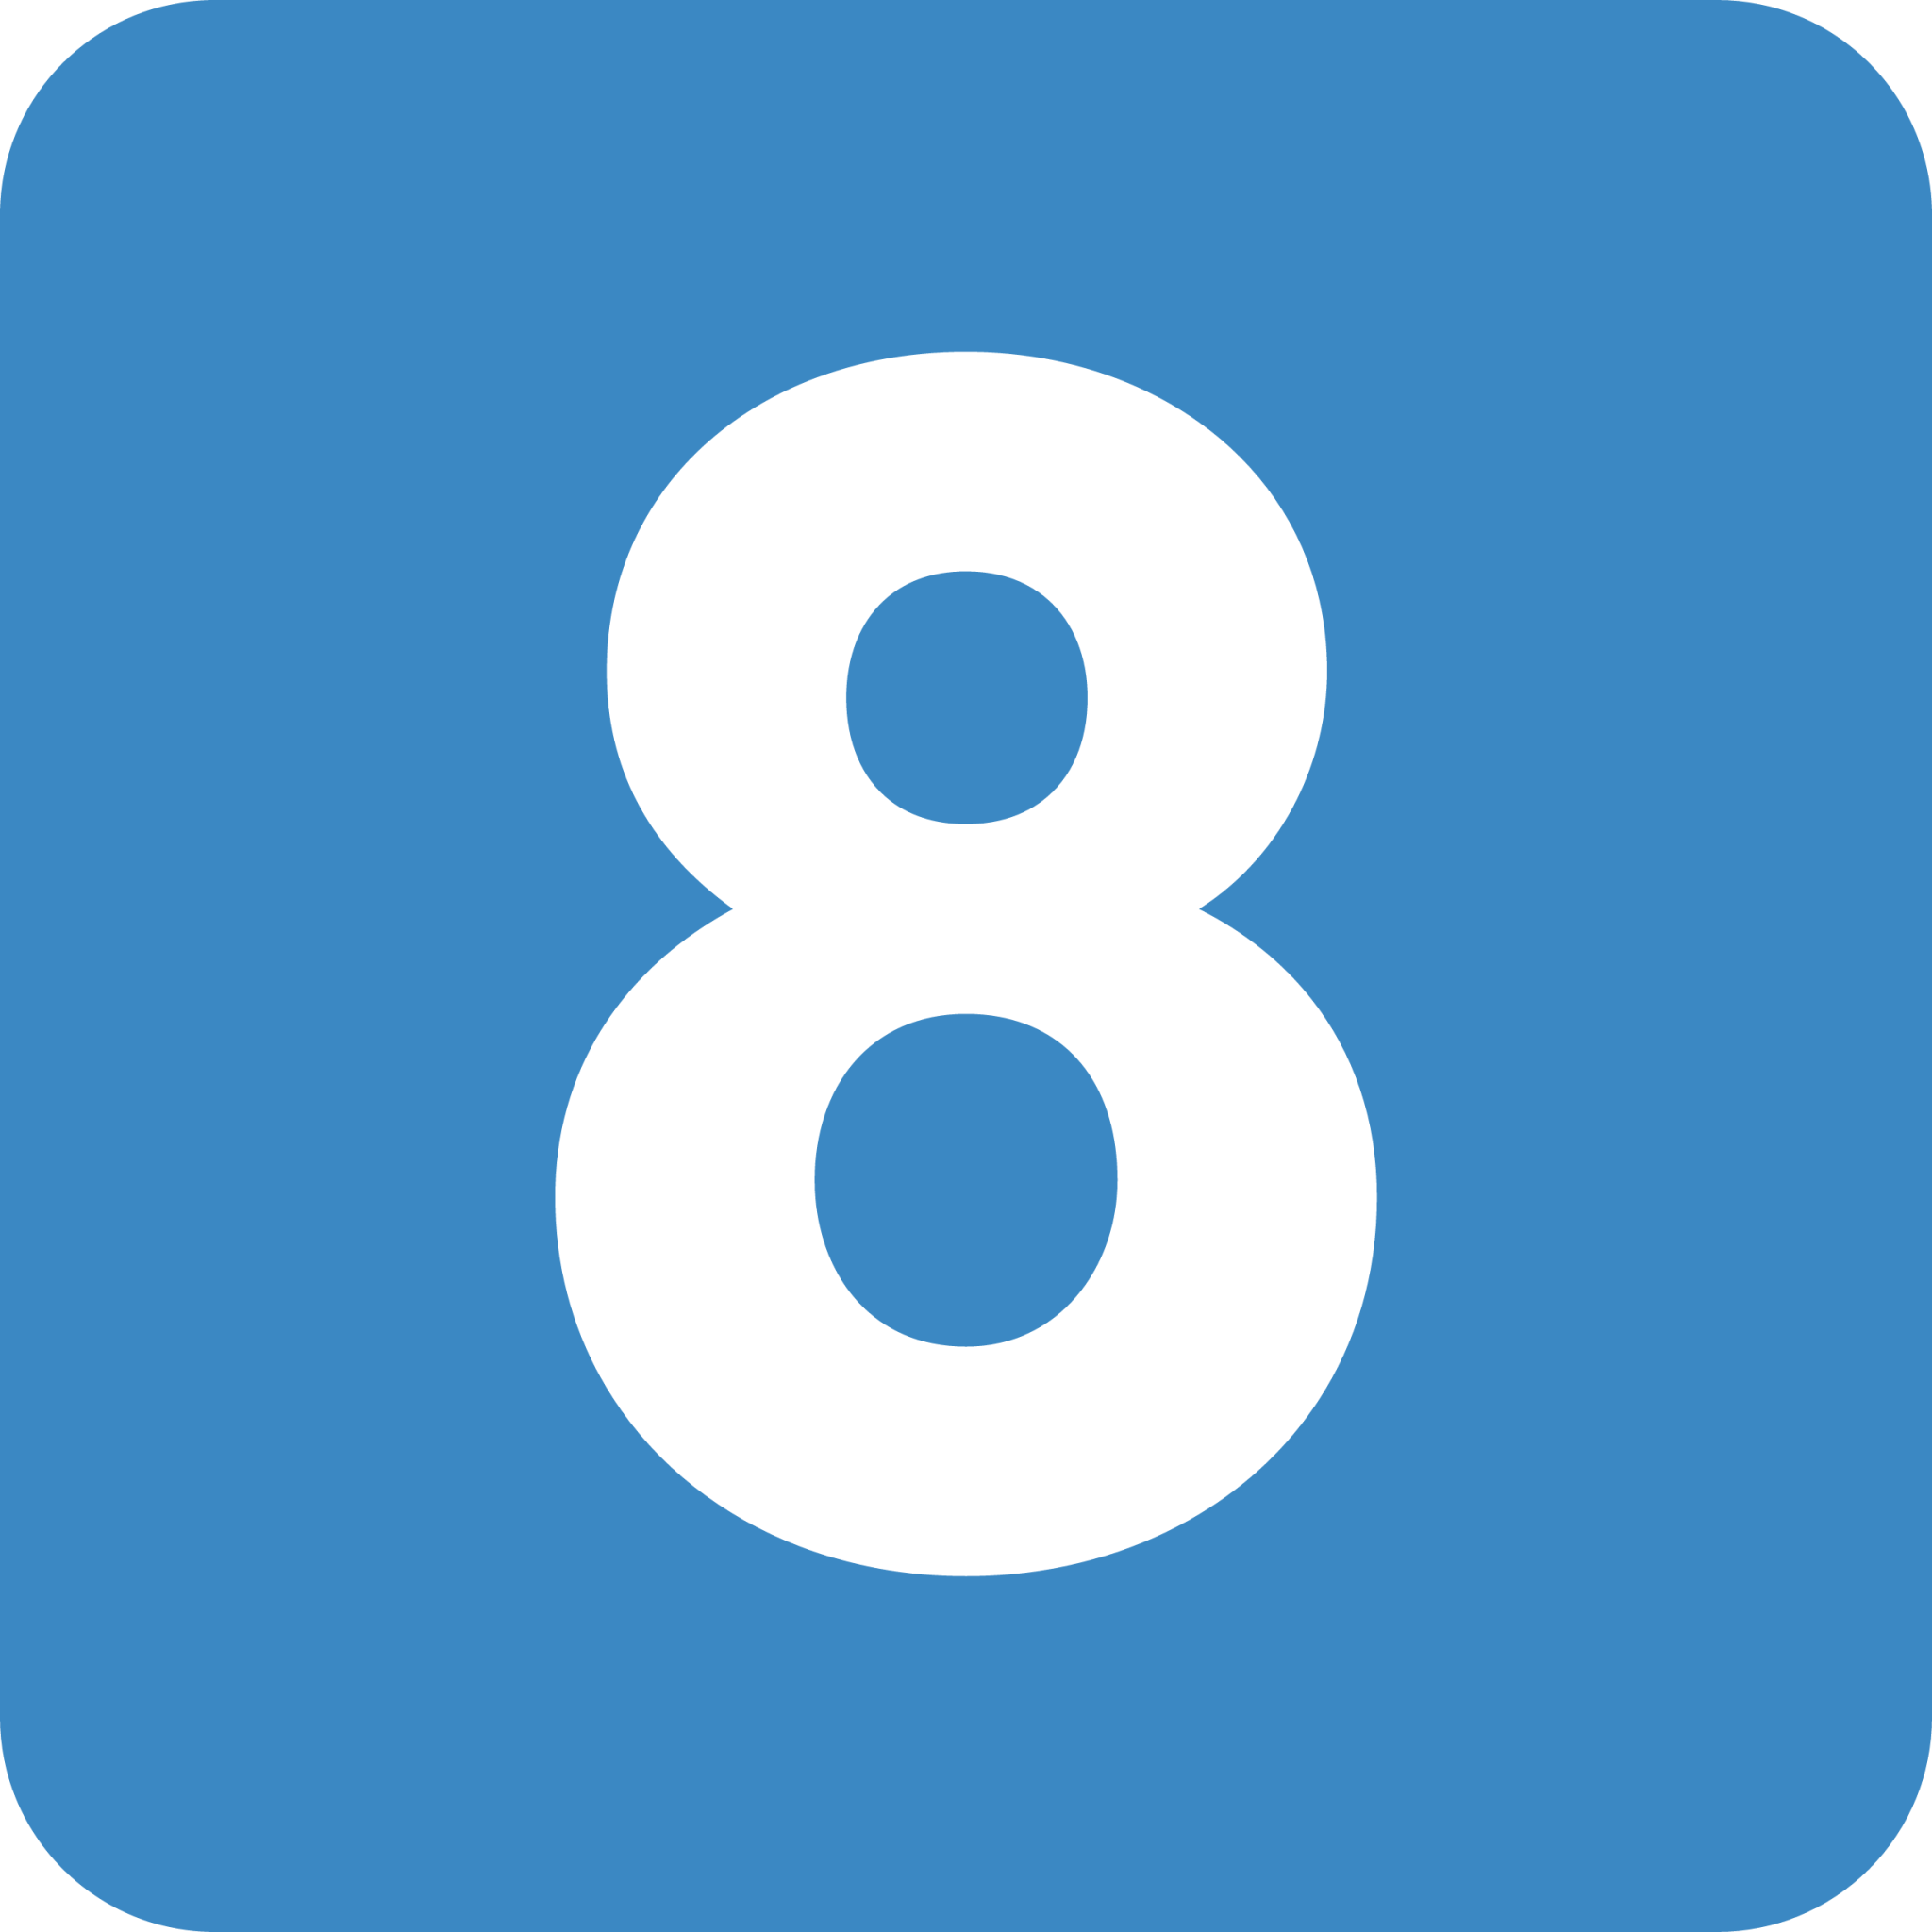 8 digit emoji